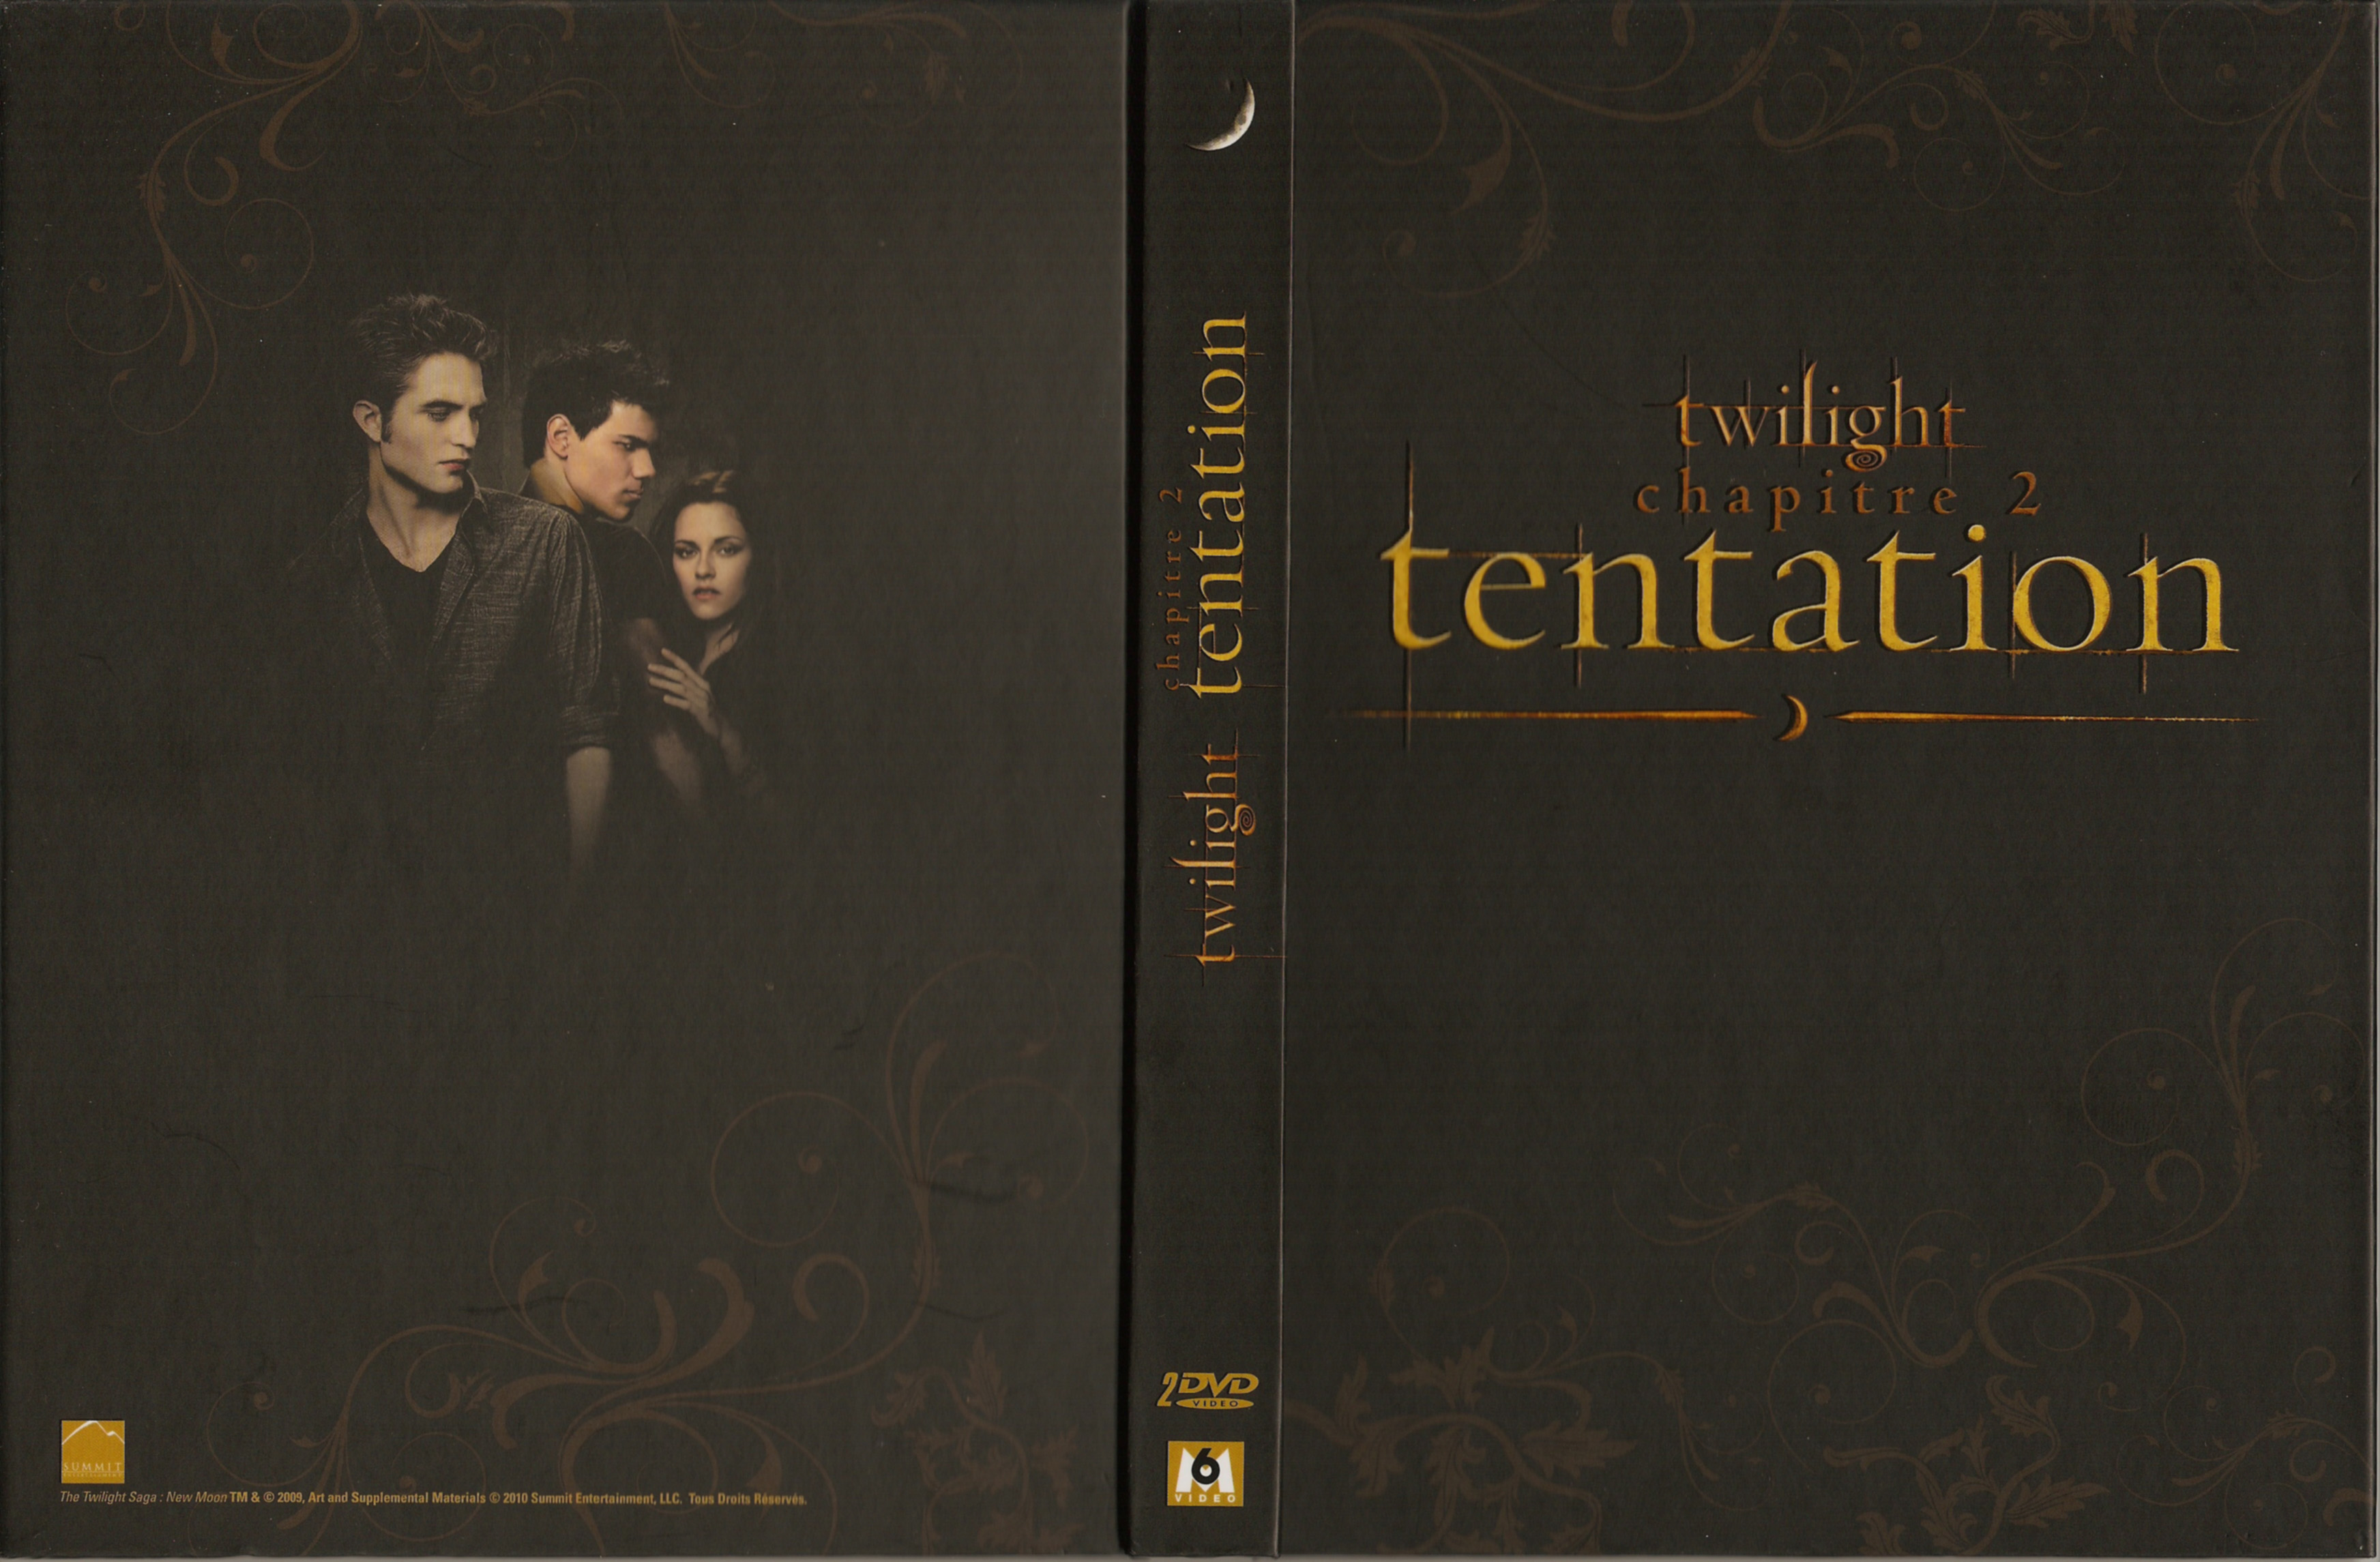 Jaquette DVD Twilight Chapitre 2 - Tentation v2